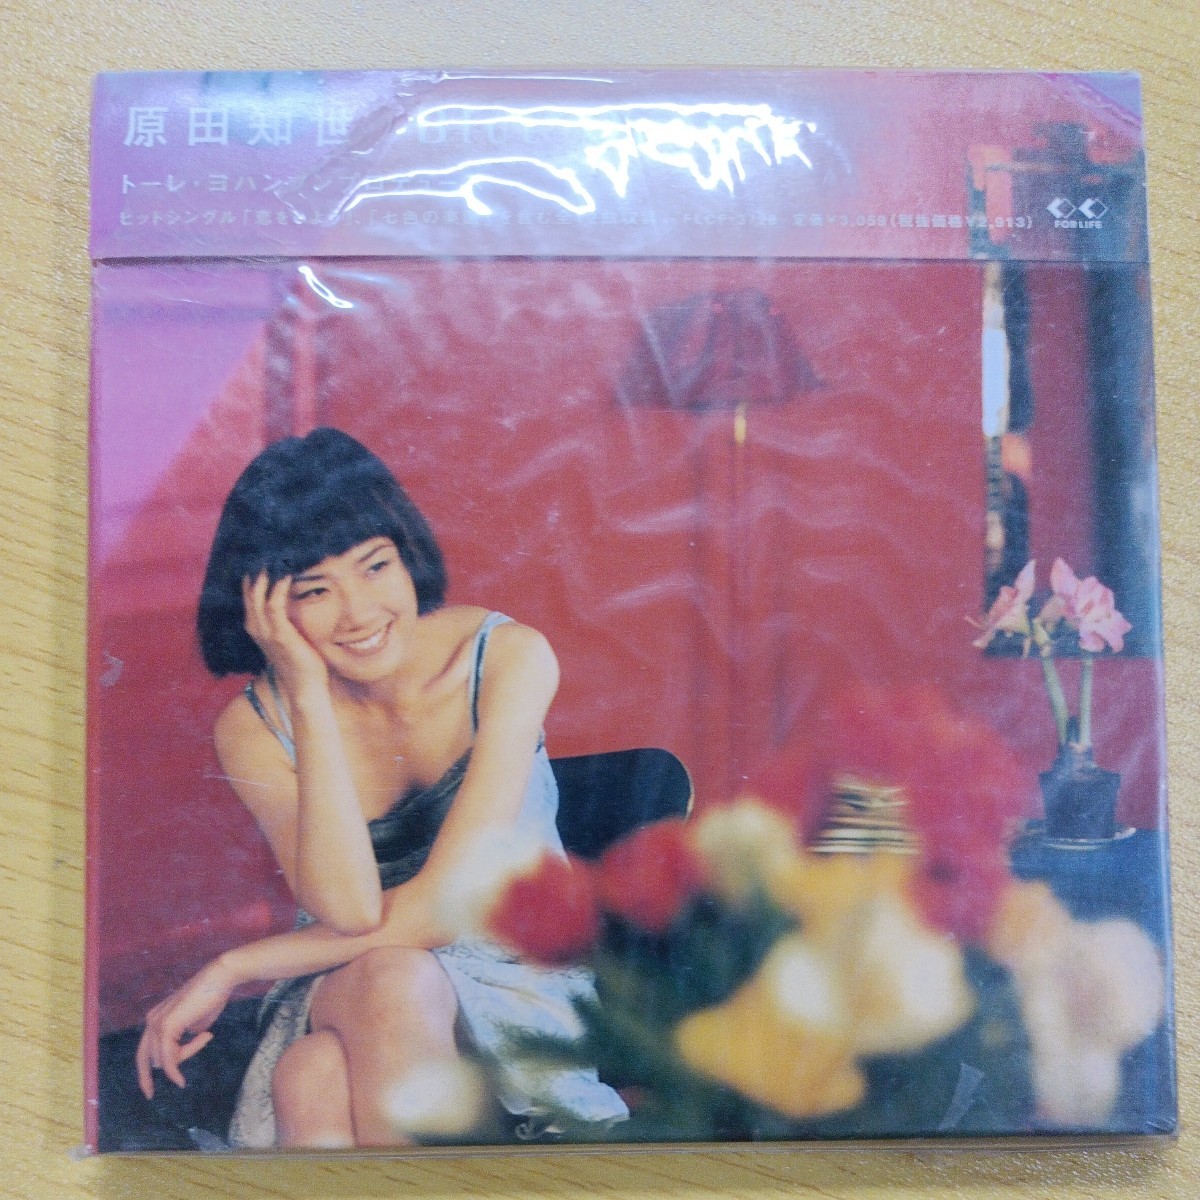 CD Tomoyo Harada Blue Orange Torre Johansson выпустил неоткрытый новый, но сложный